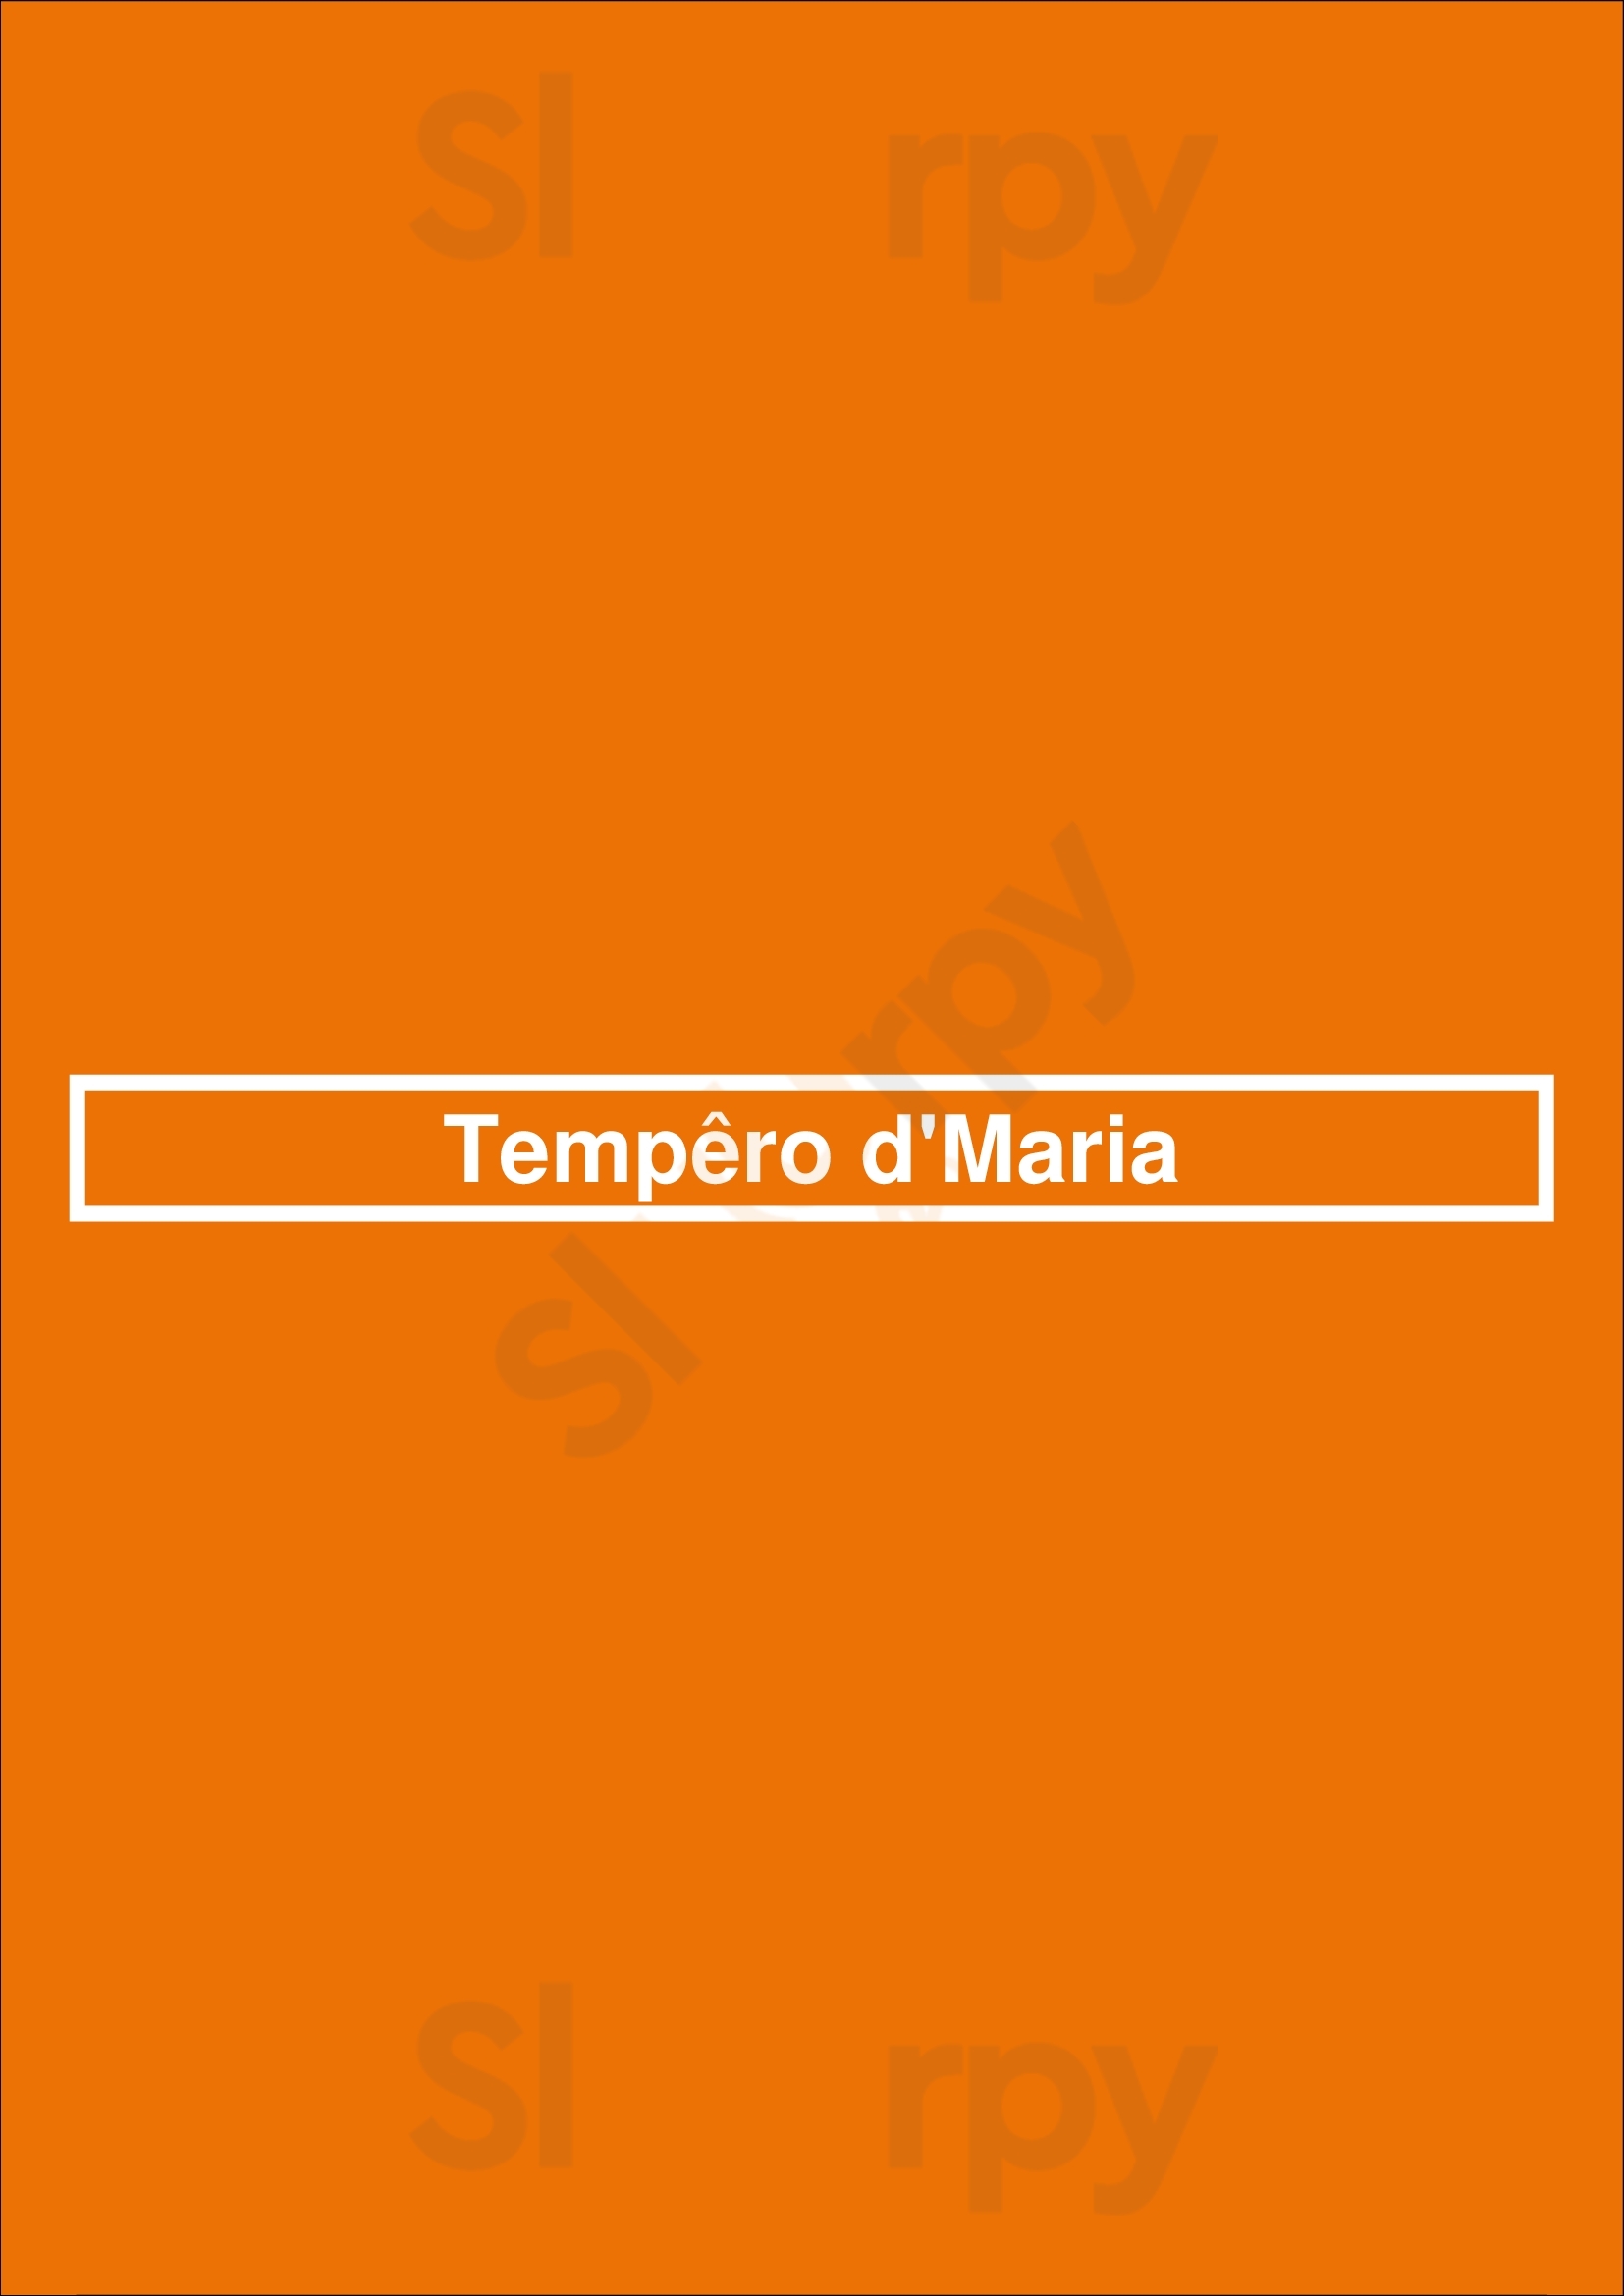 Tempêro D'maria Vila Nova de Gaia Menu - 1